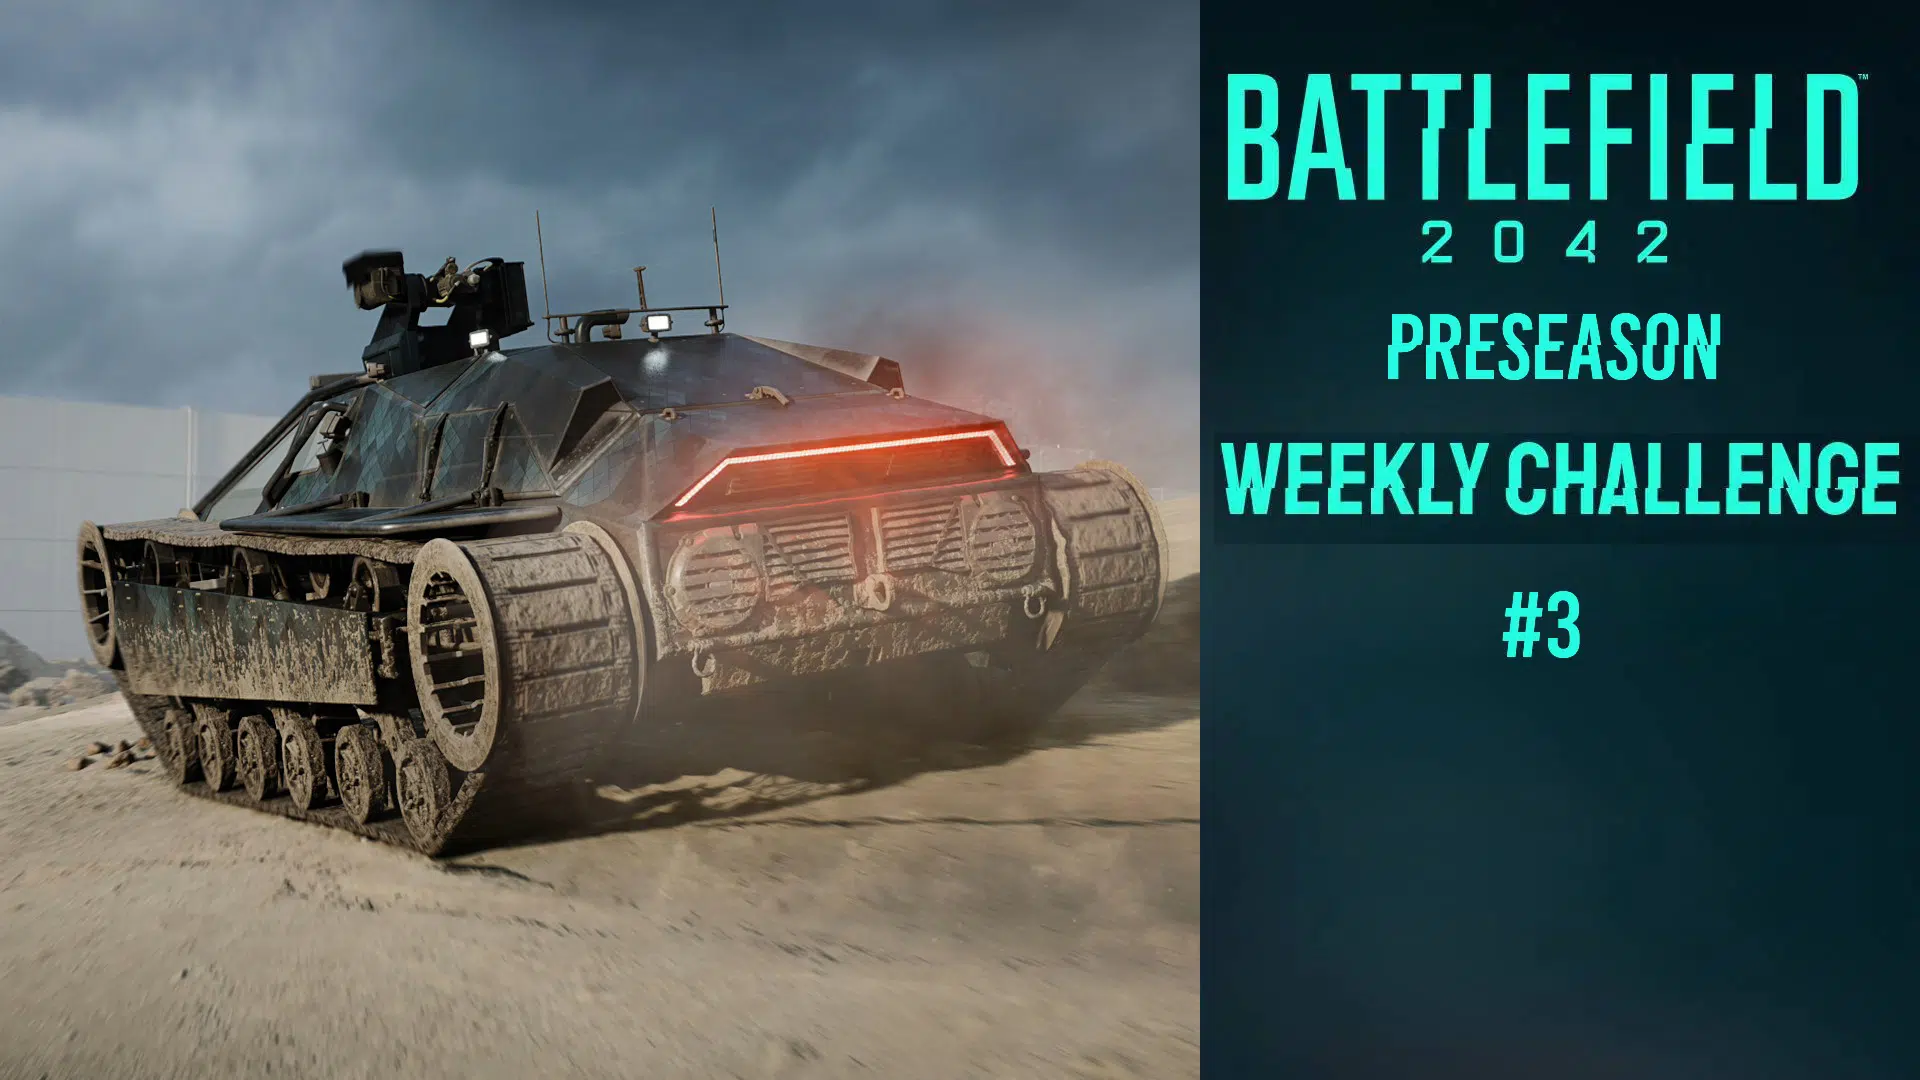 Battlefield 2042 Weekly Challenge #3 (Dec. 23-30) Reward